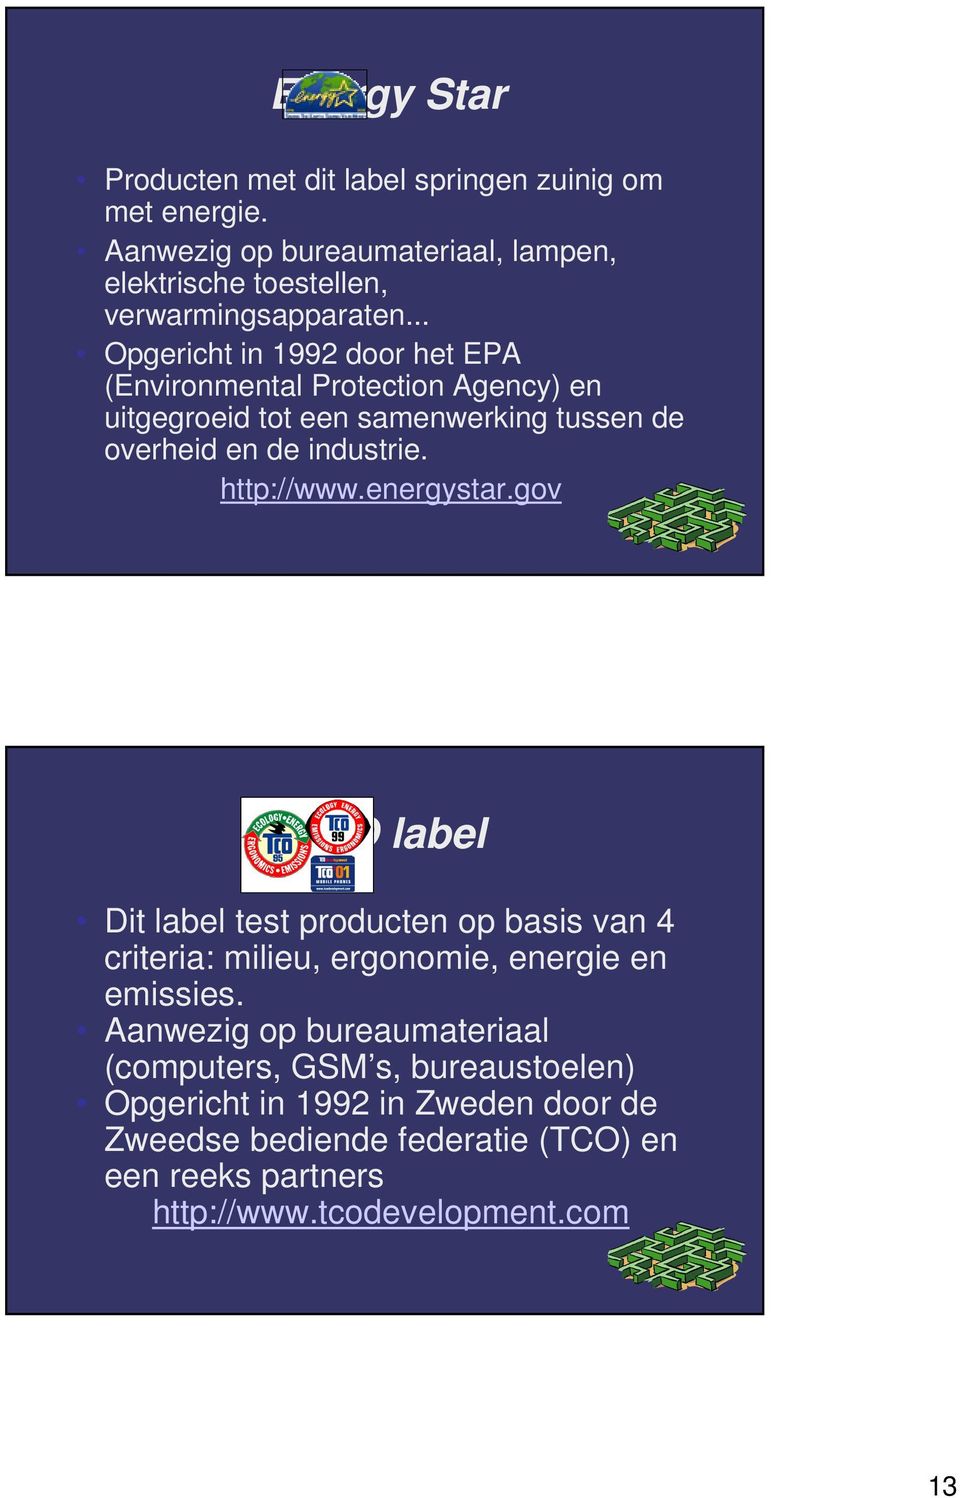 energystar.gov TCO label Dit label test producten op basis van 4 criteria: milieu, ergonomie, energie en emissies.